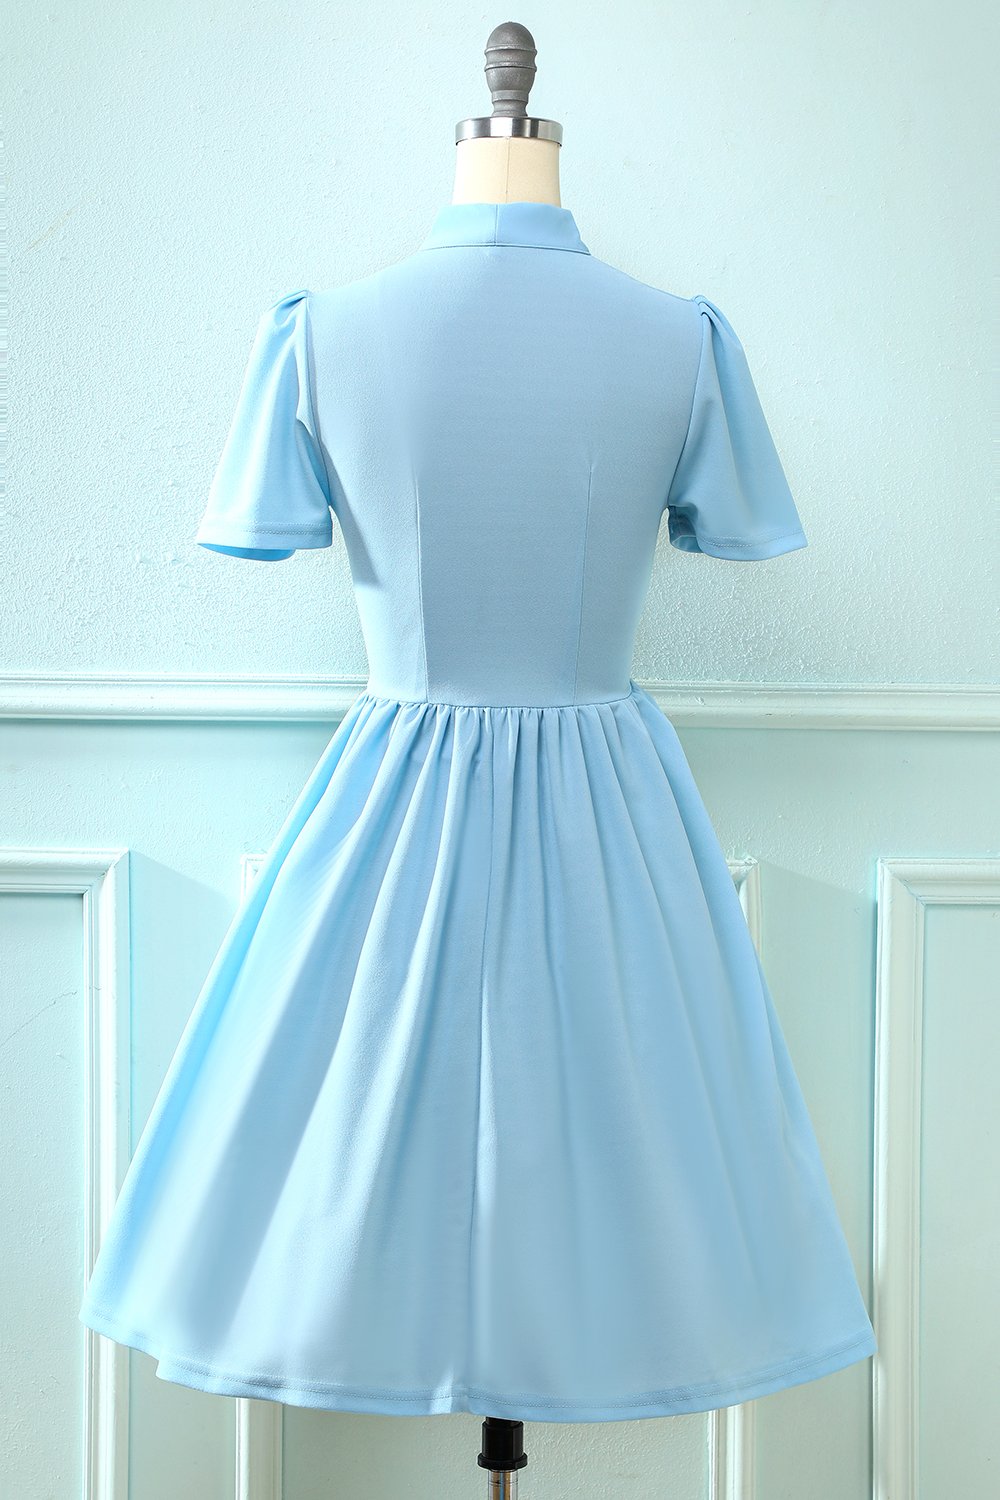 Robe Bleue Vintage des années 50